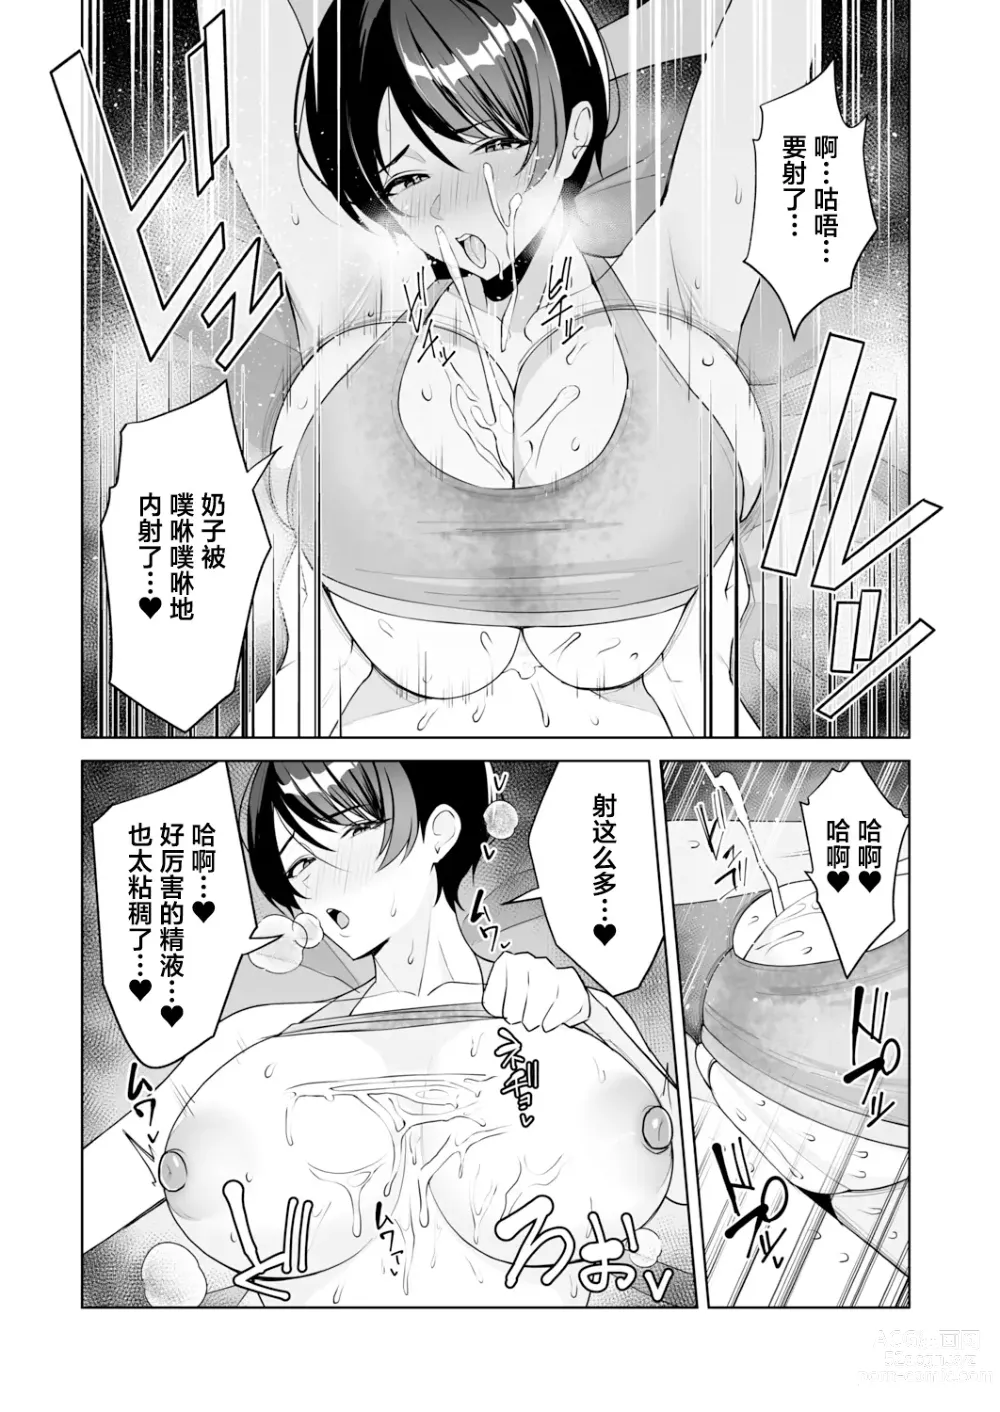 Page 143 of manga Gibo-san wa boku no mono 1-6